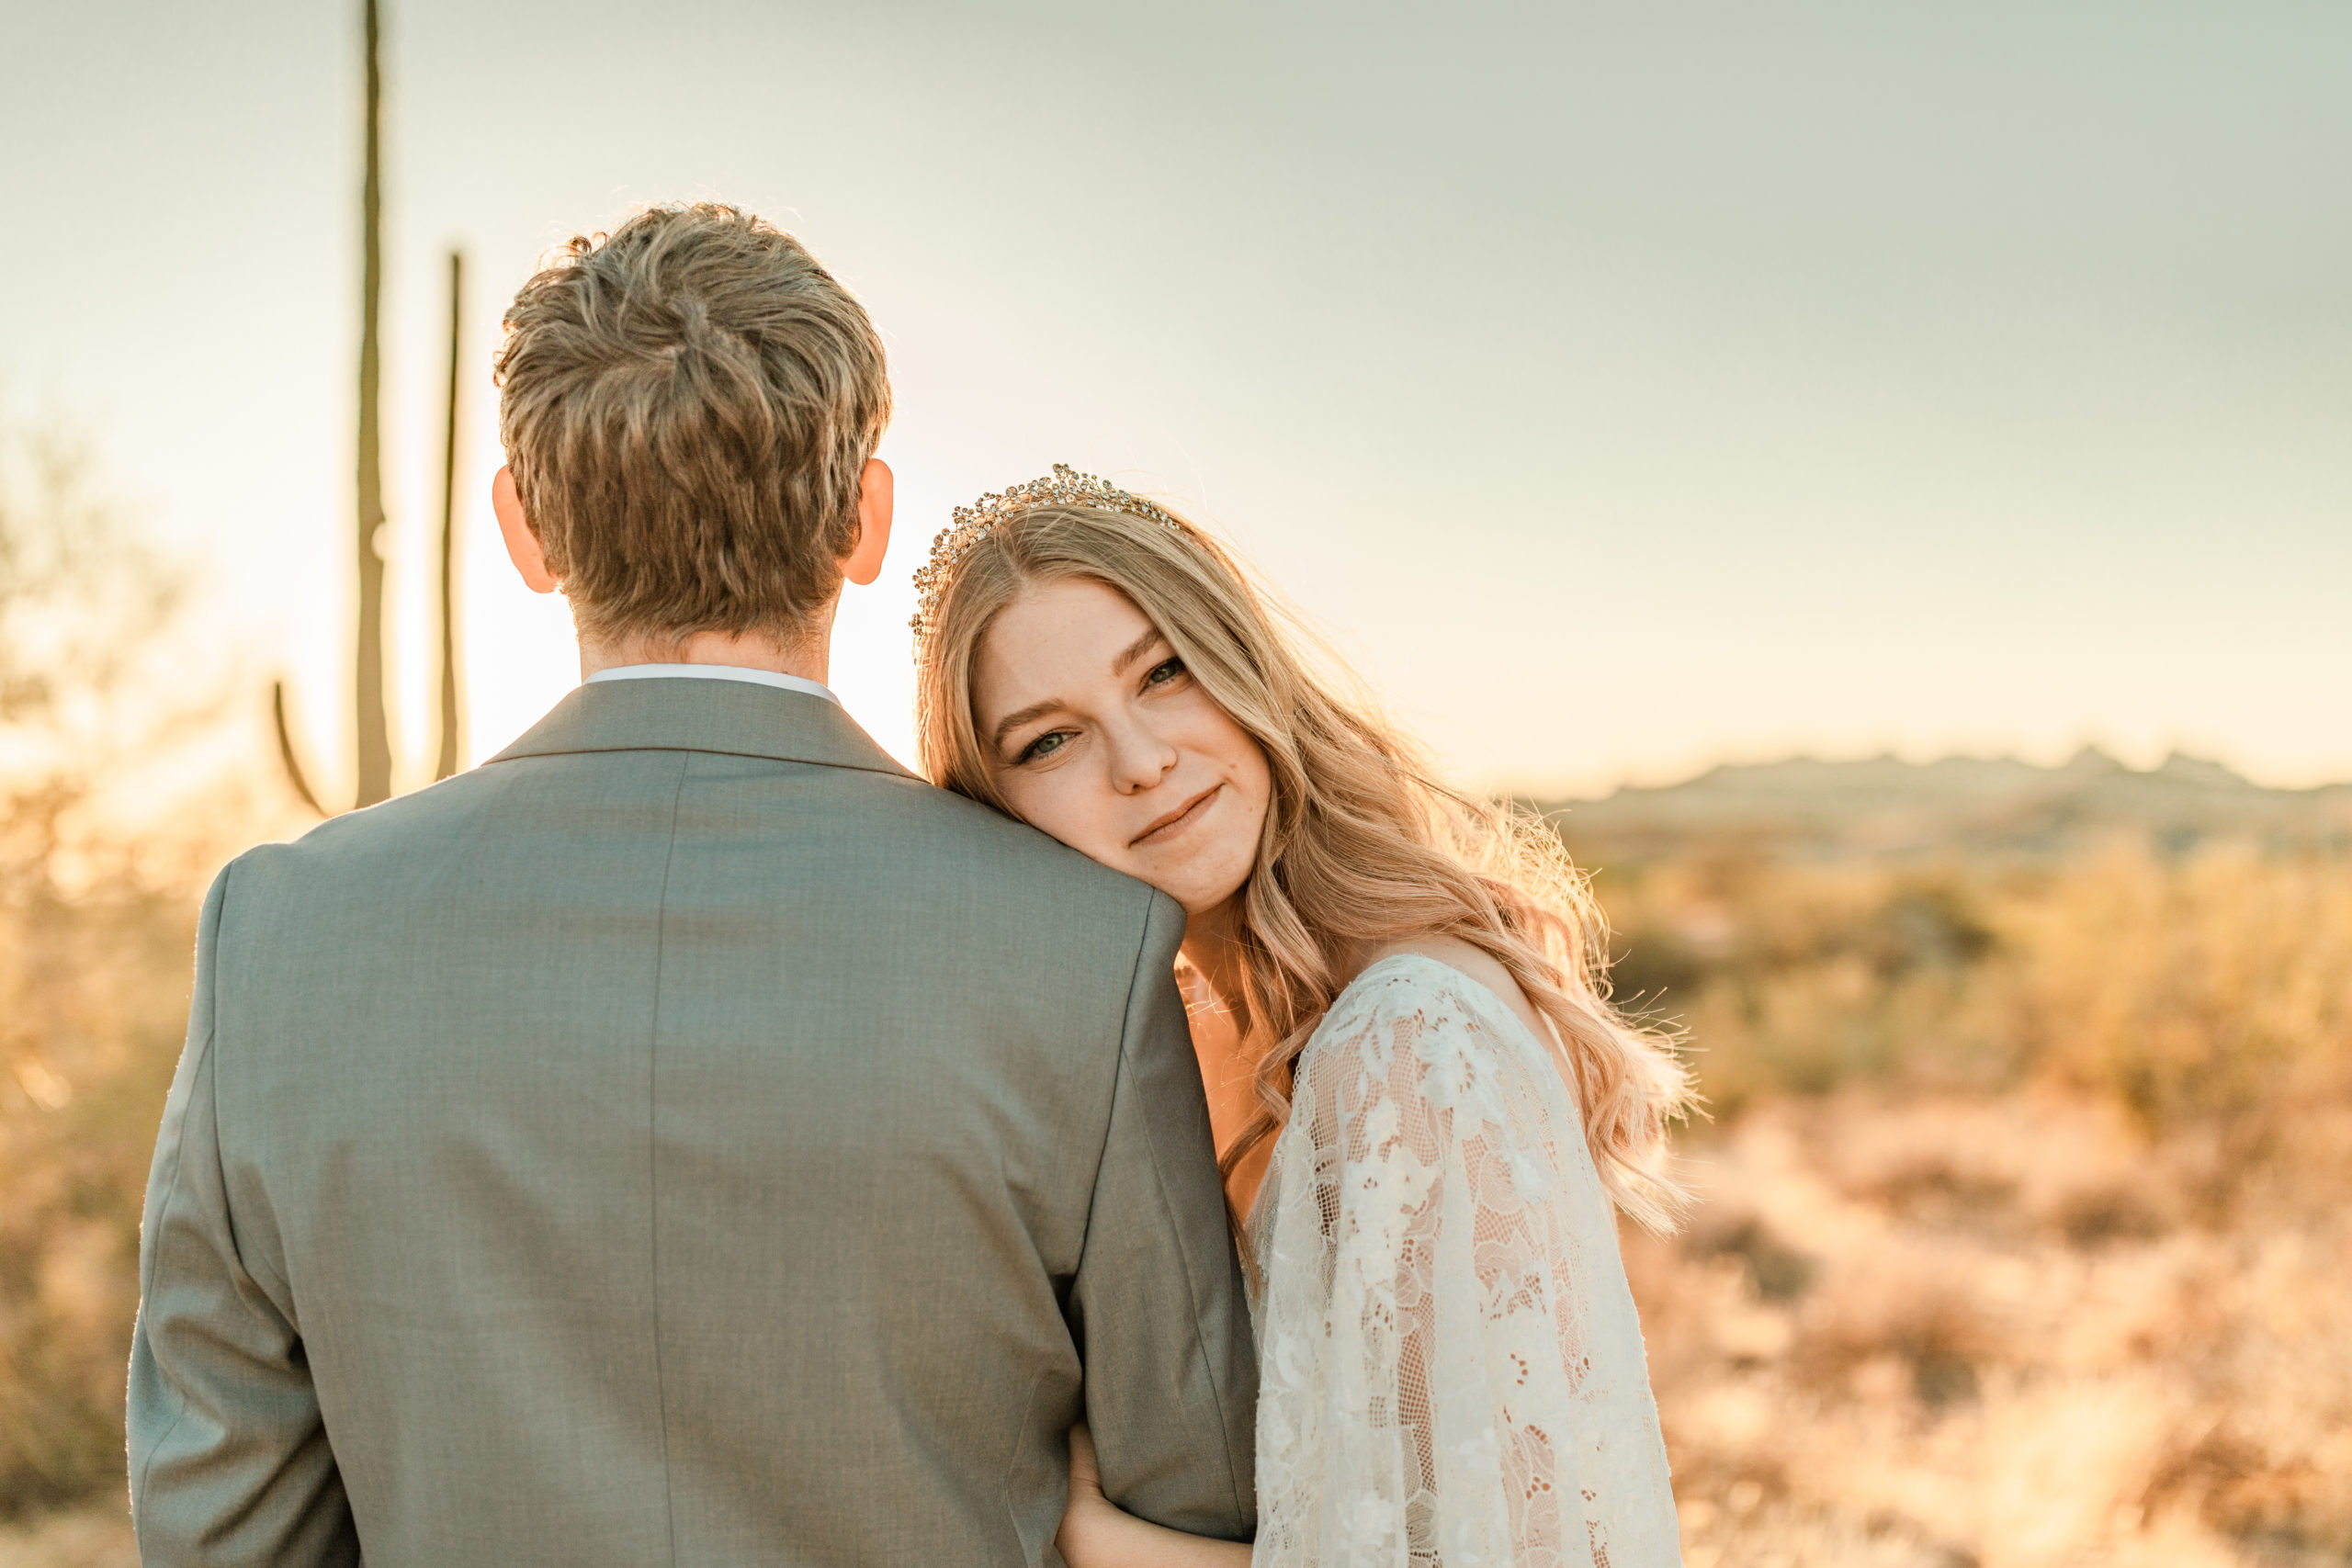 bride and groom wedding photos in Arizona desert elopement